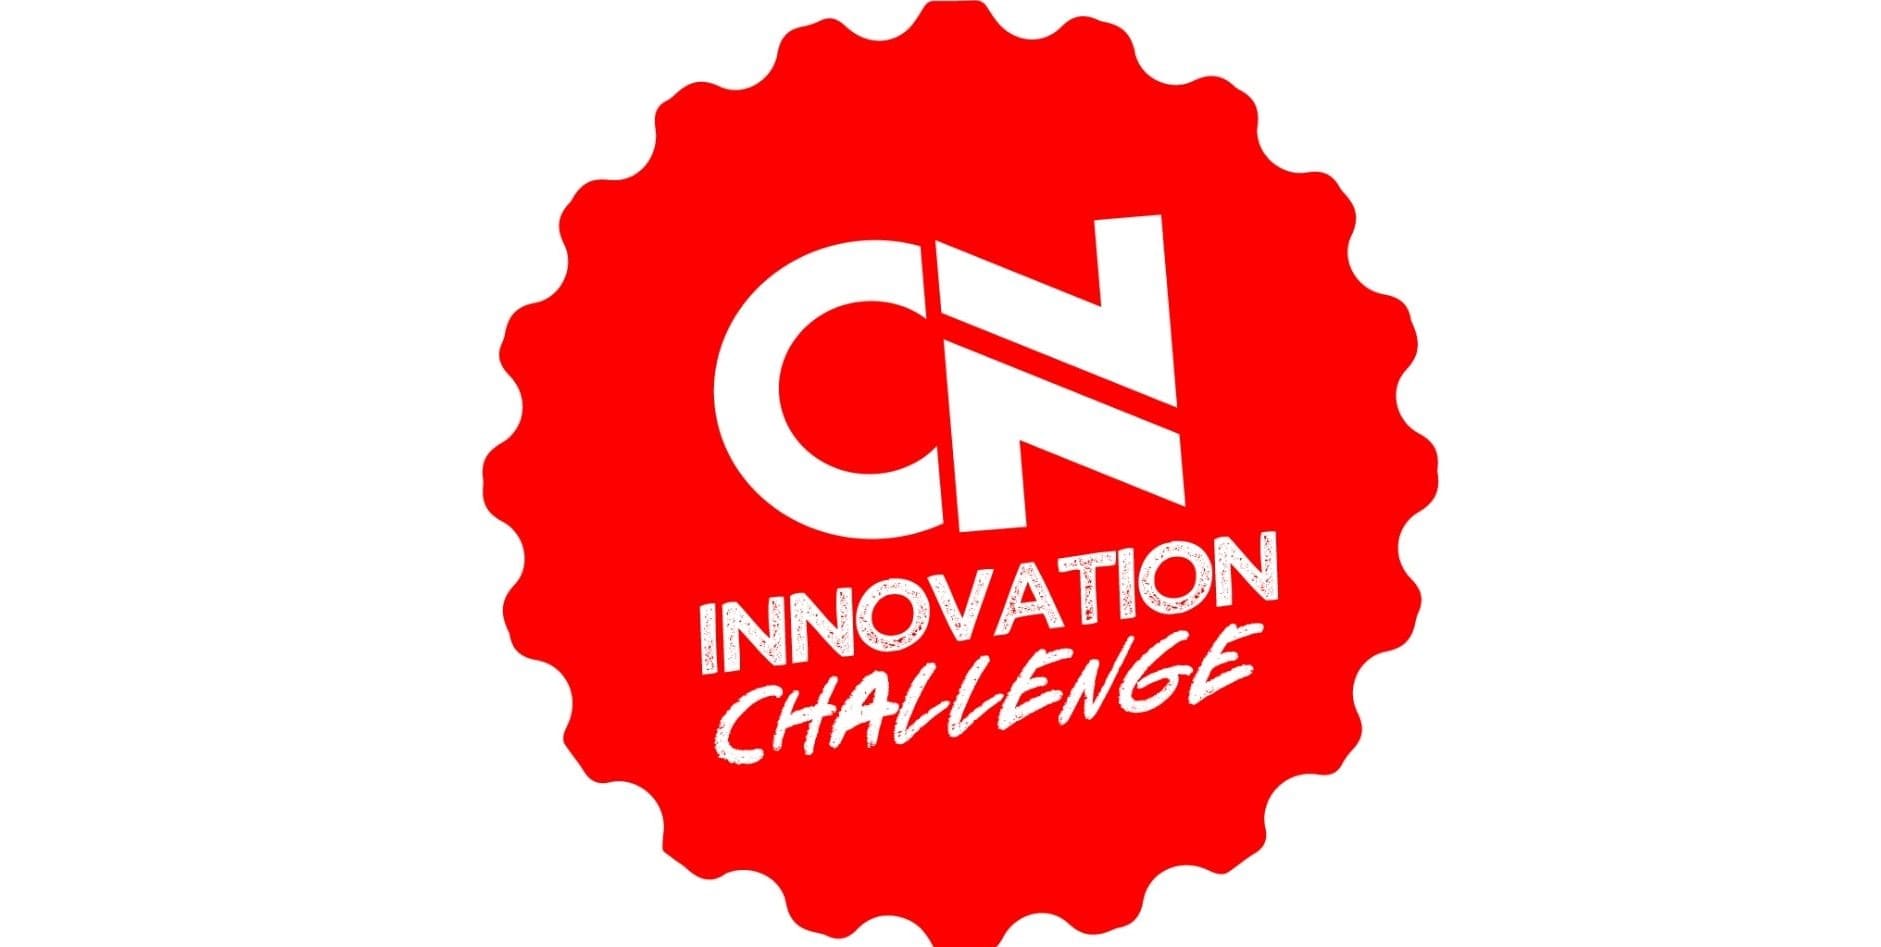 Lee más sobre el artículo “CN Innovation Challenge”, iniciativa que busca ideas innovadoras en estudiantes universitarios